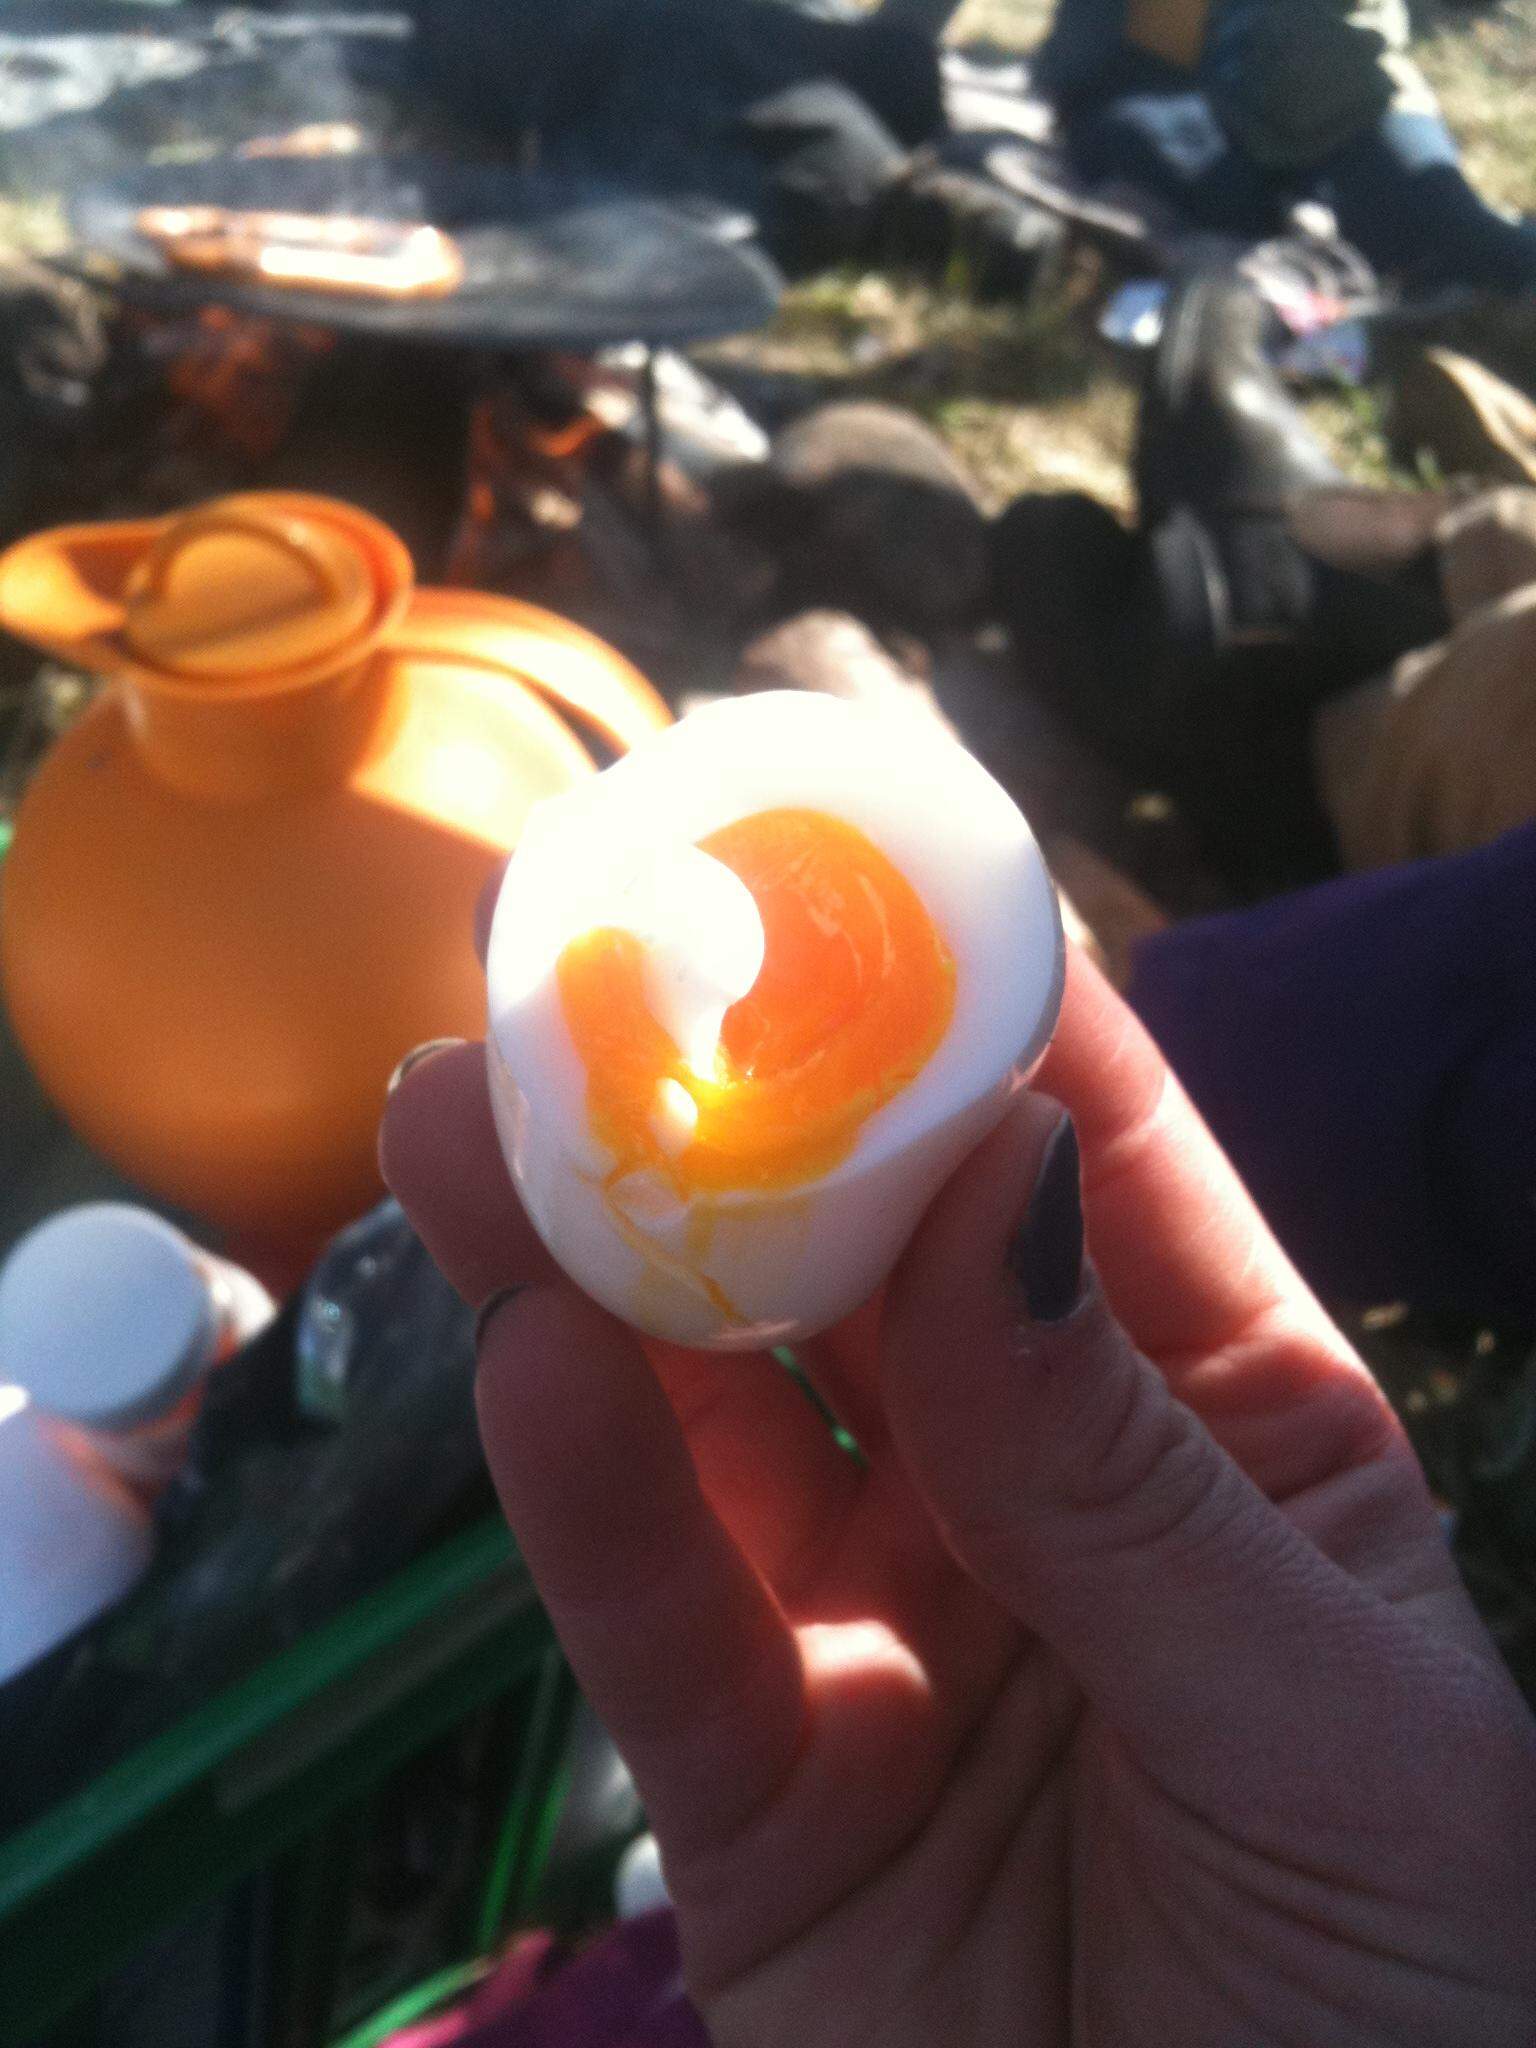 I Bregninge samles vi og koger æg  på stranden Påskelørdag